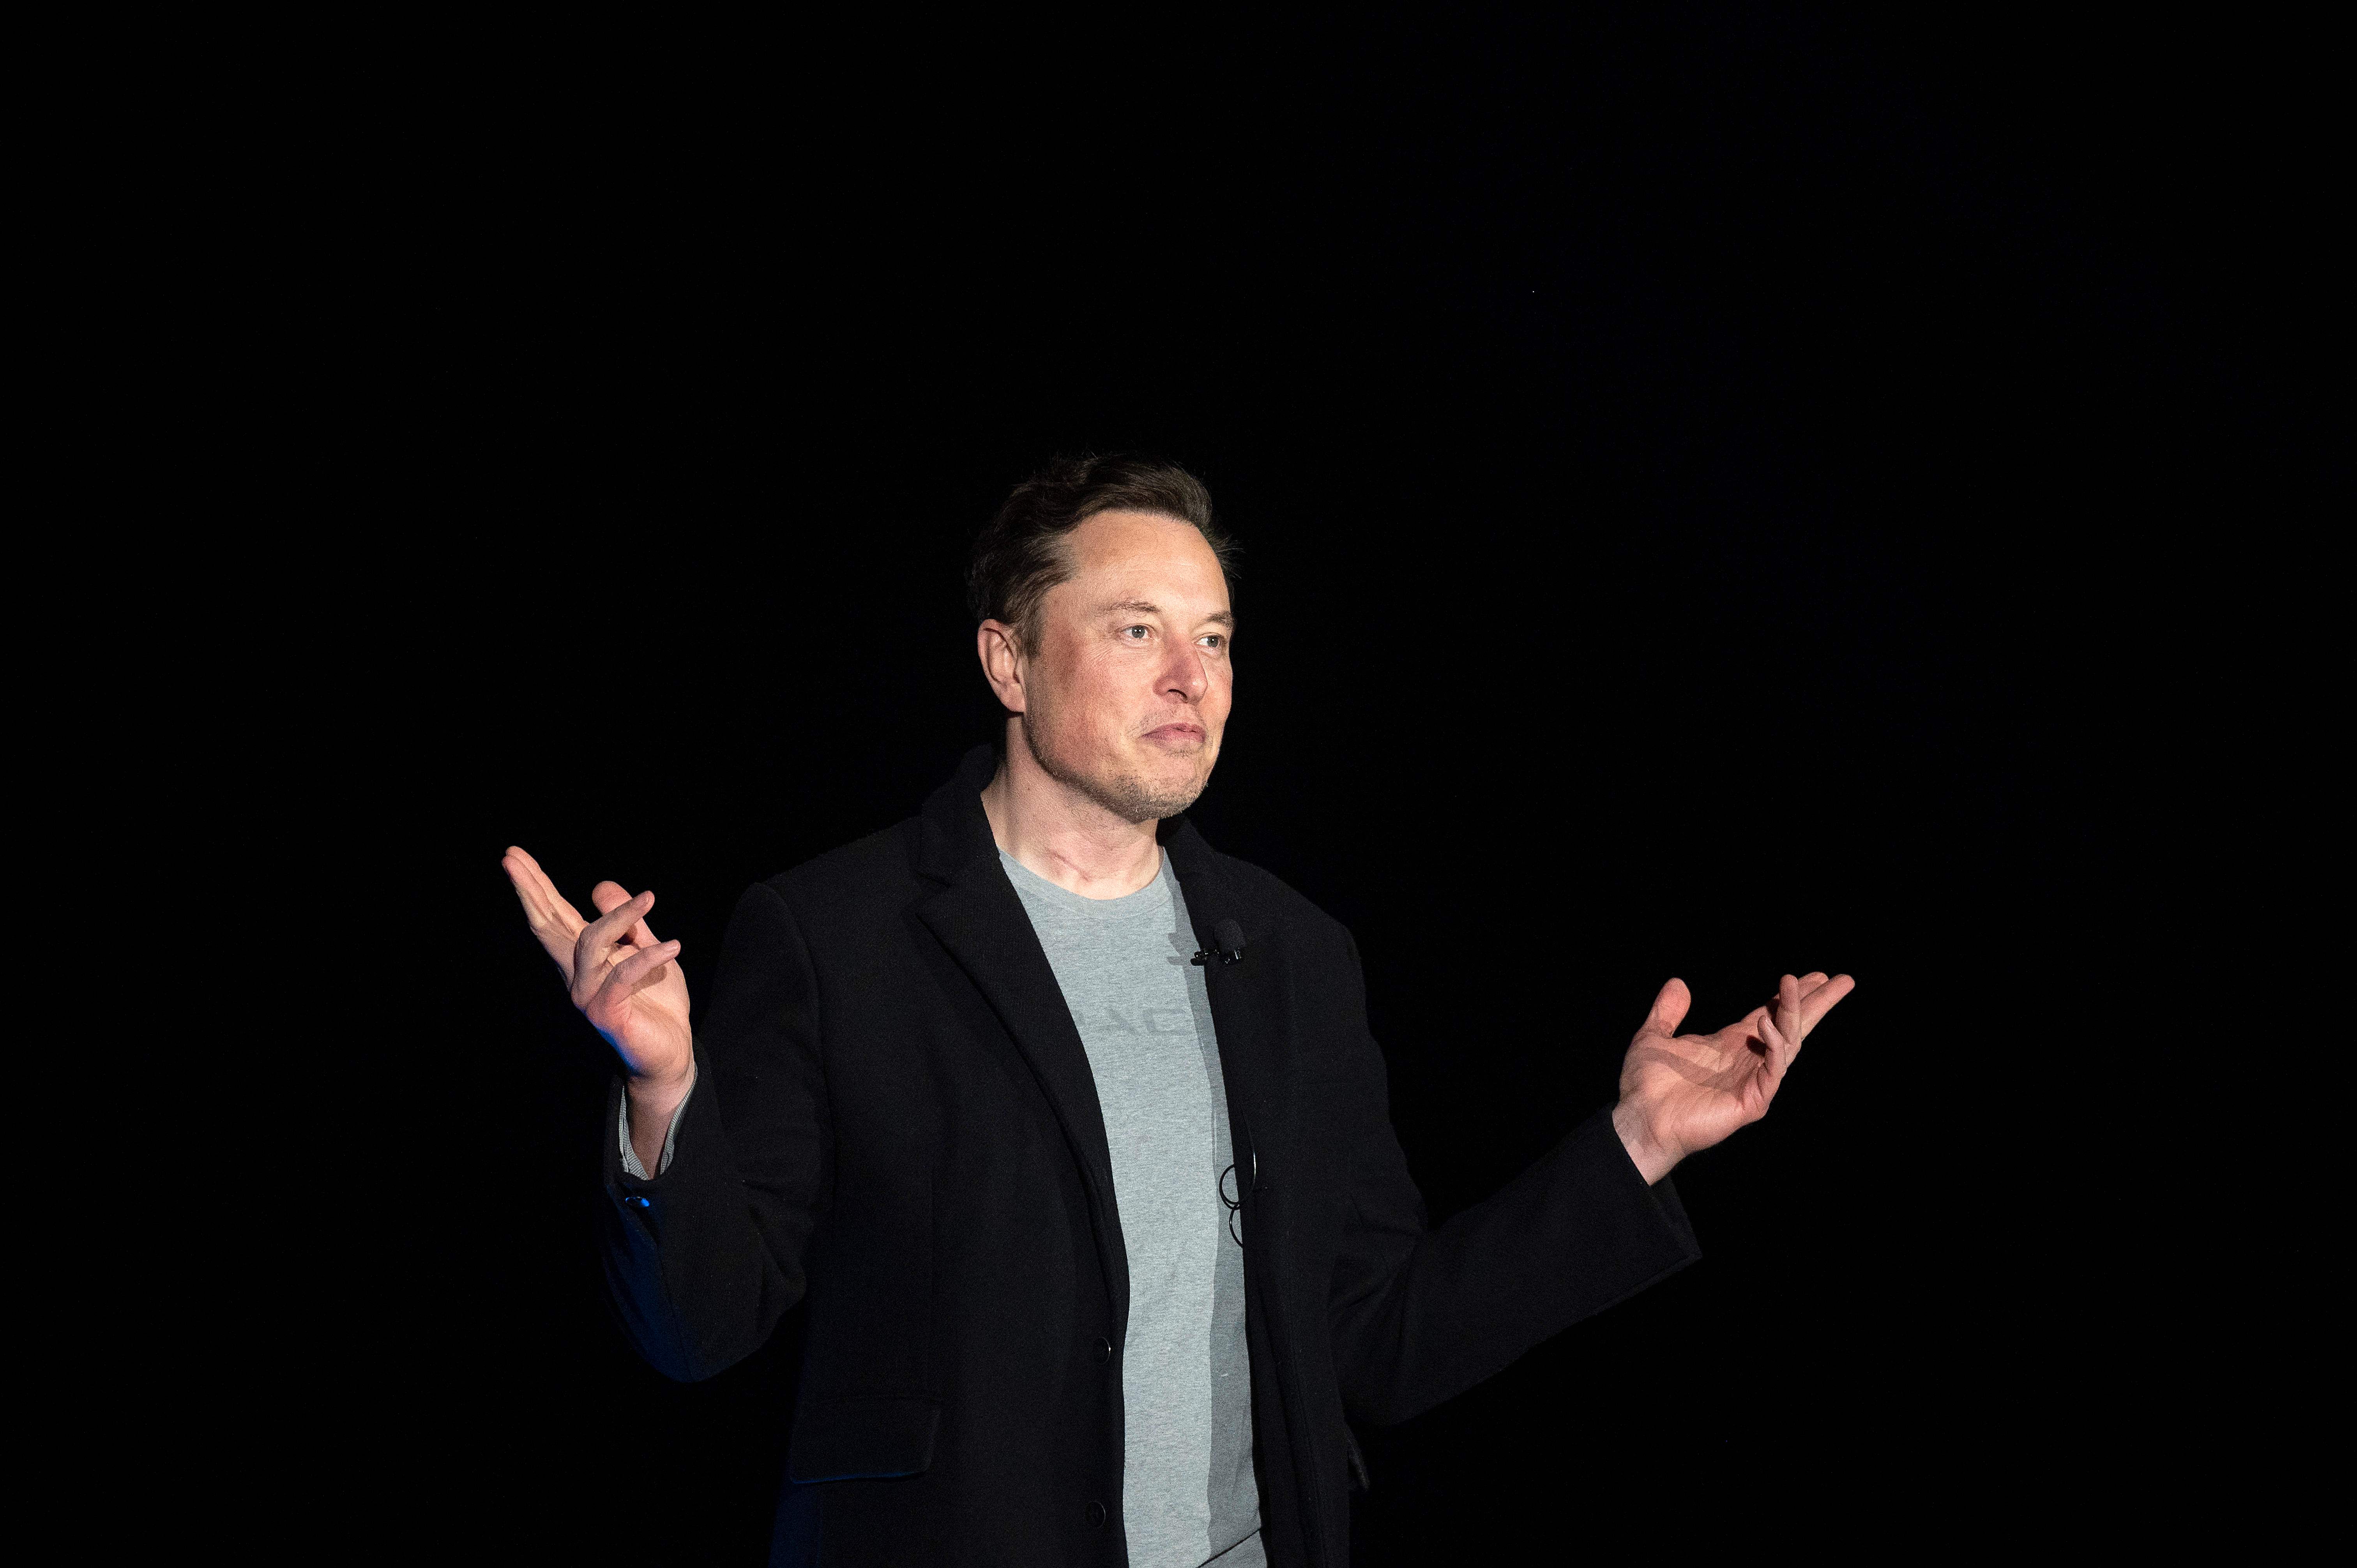 Bernard Arnault tops Elon Musk as world's richest person: Forbes